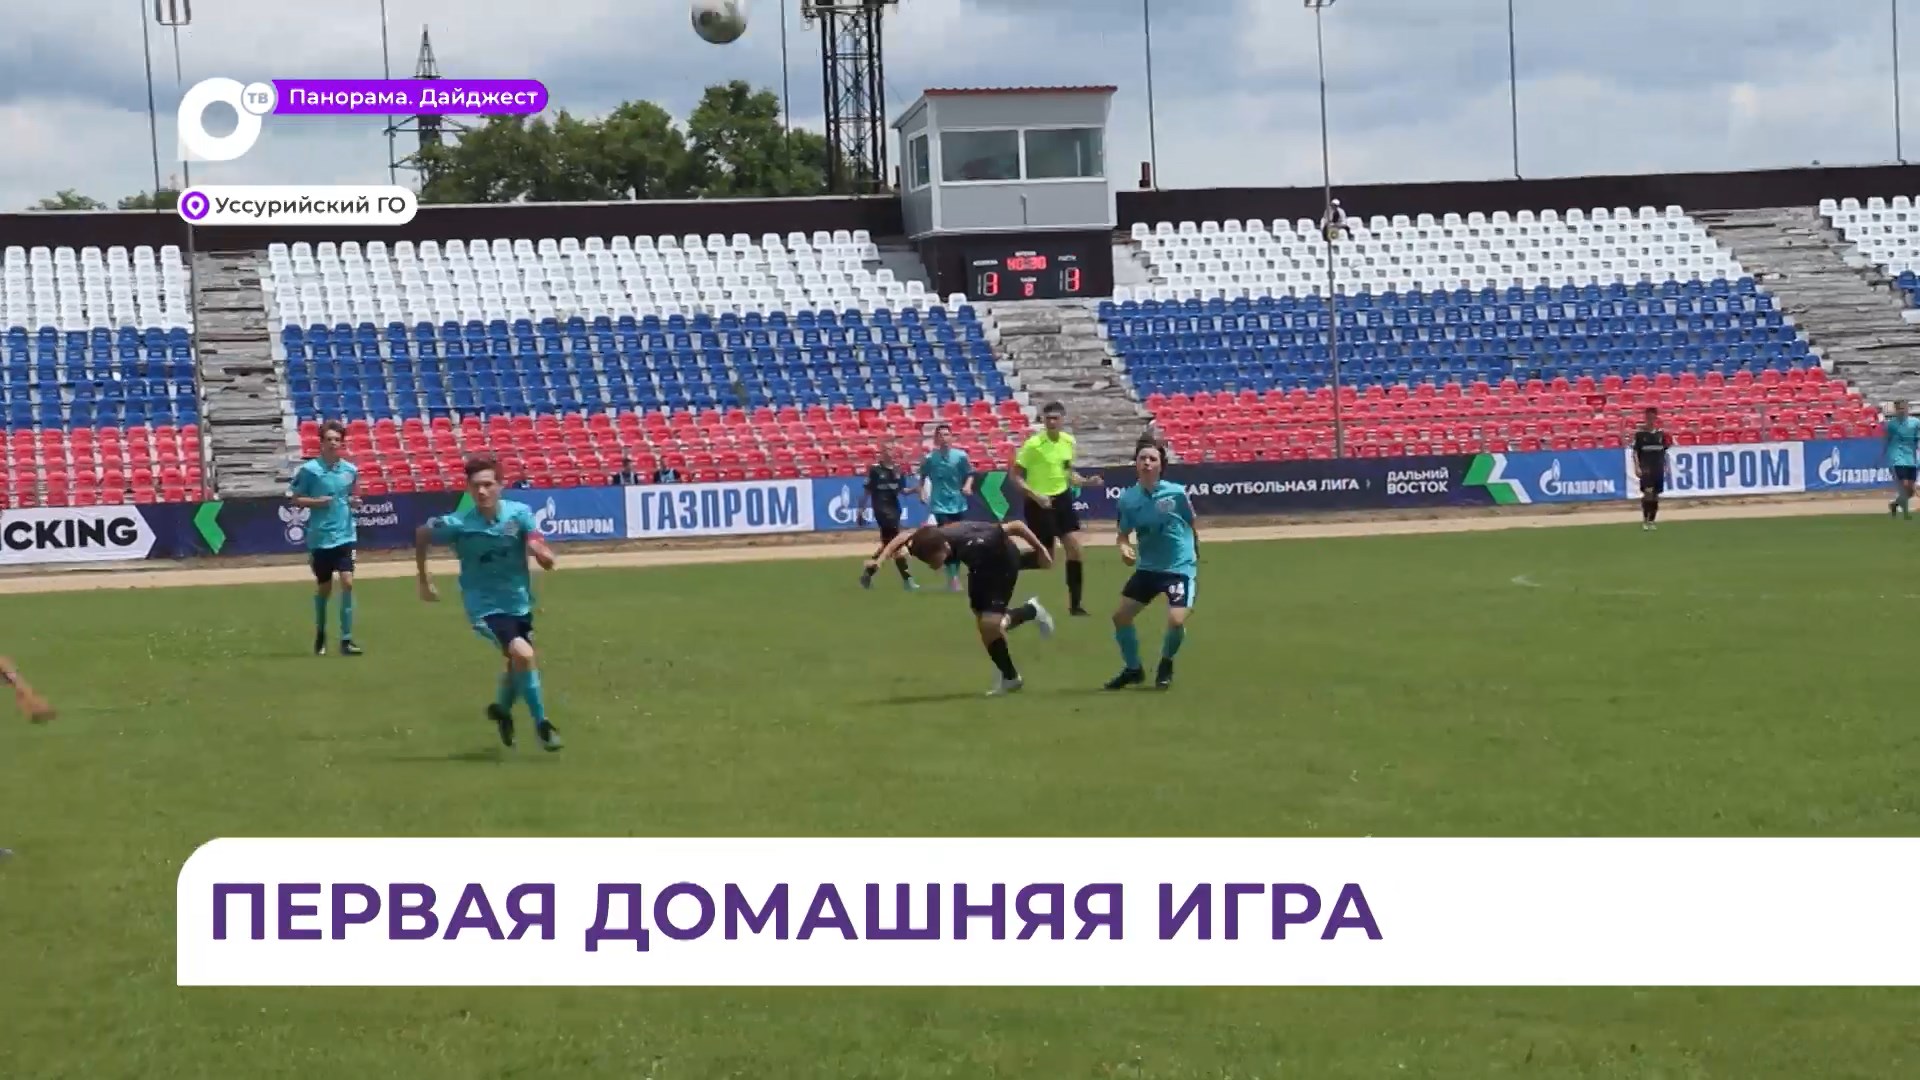 Уссурийск принял первый домашний матч юношеской футбольной лиги